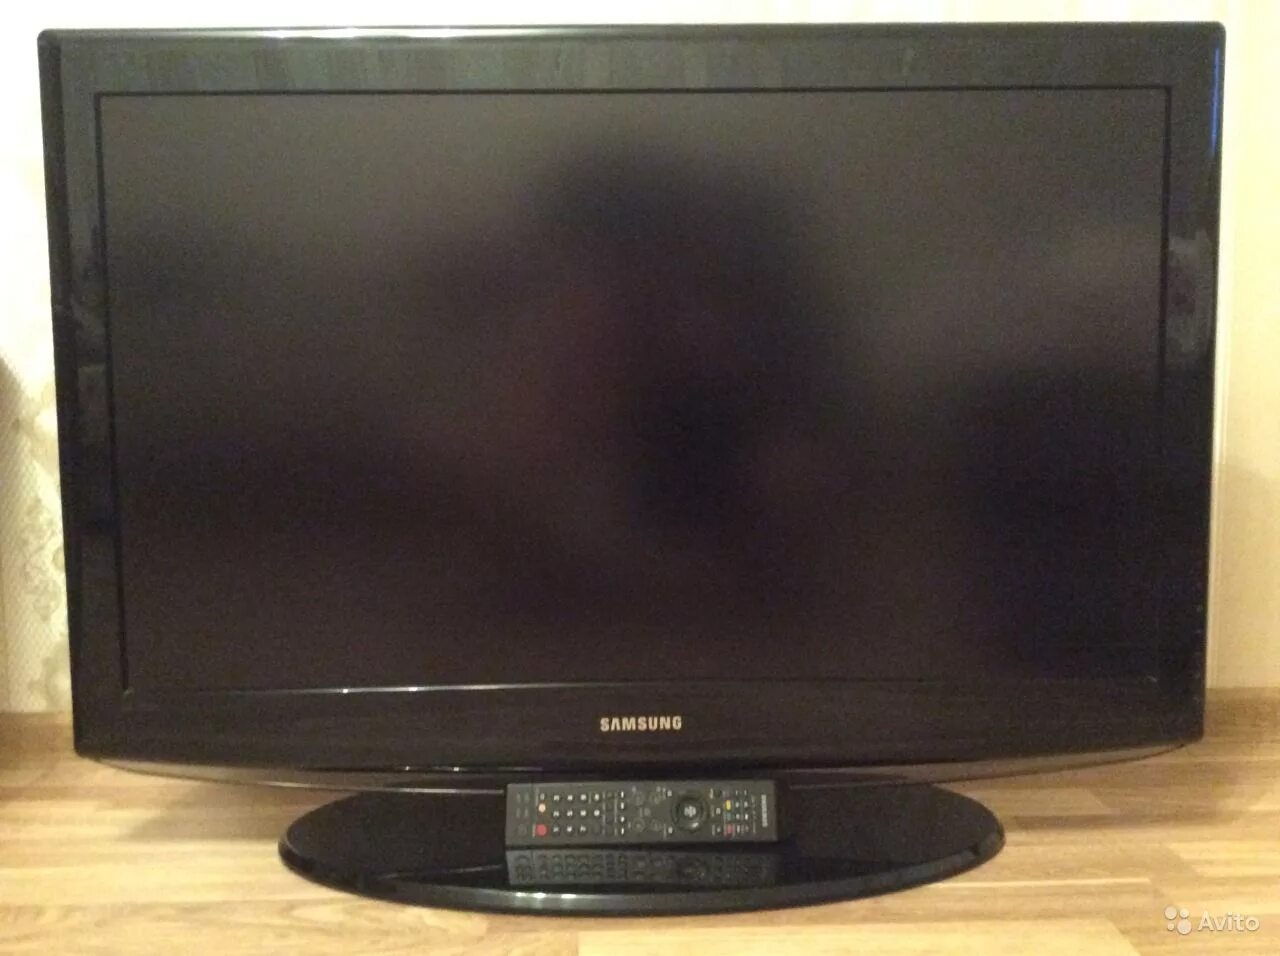 Купить телевизор самсунг на авито. Samsung le32r81b. Телевизор Samsung le37r82b. Телевизор самсунг le 37s81b 2008 год. Телевизор Samsung le-37s81b 37".